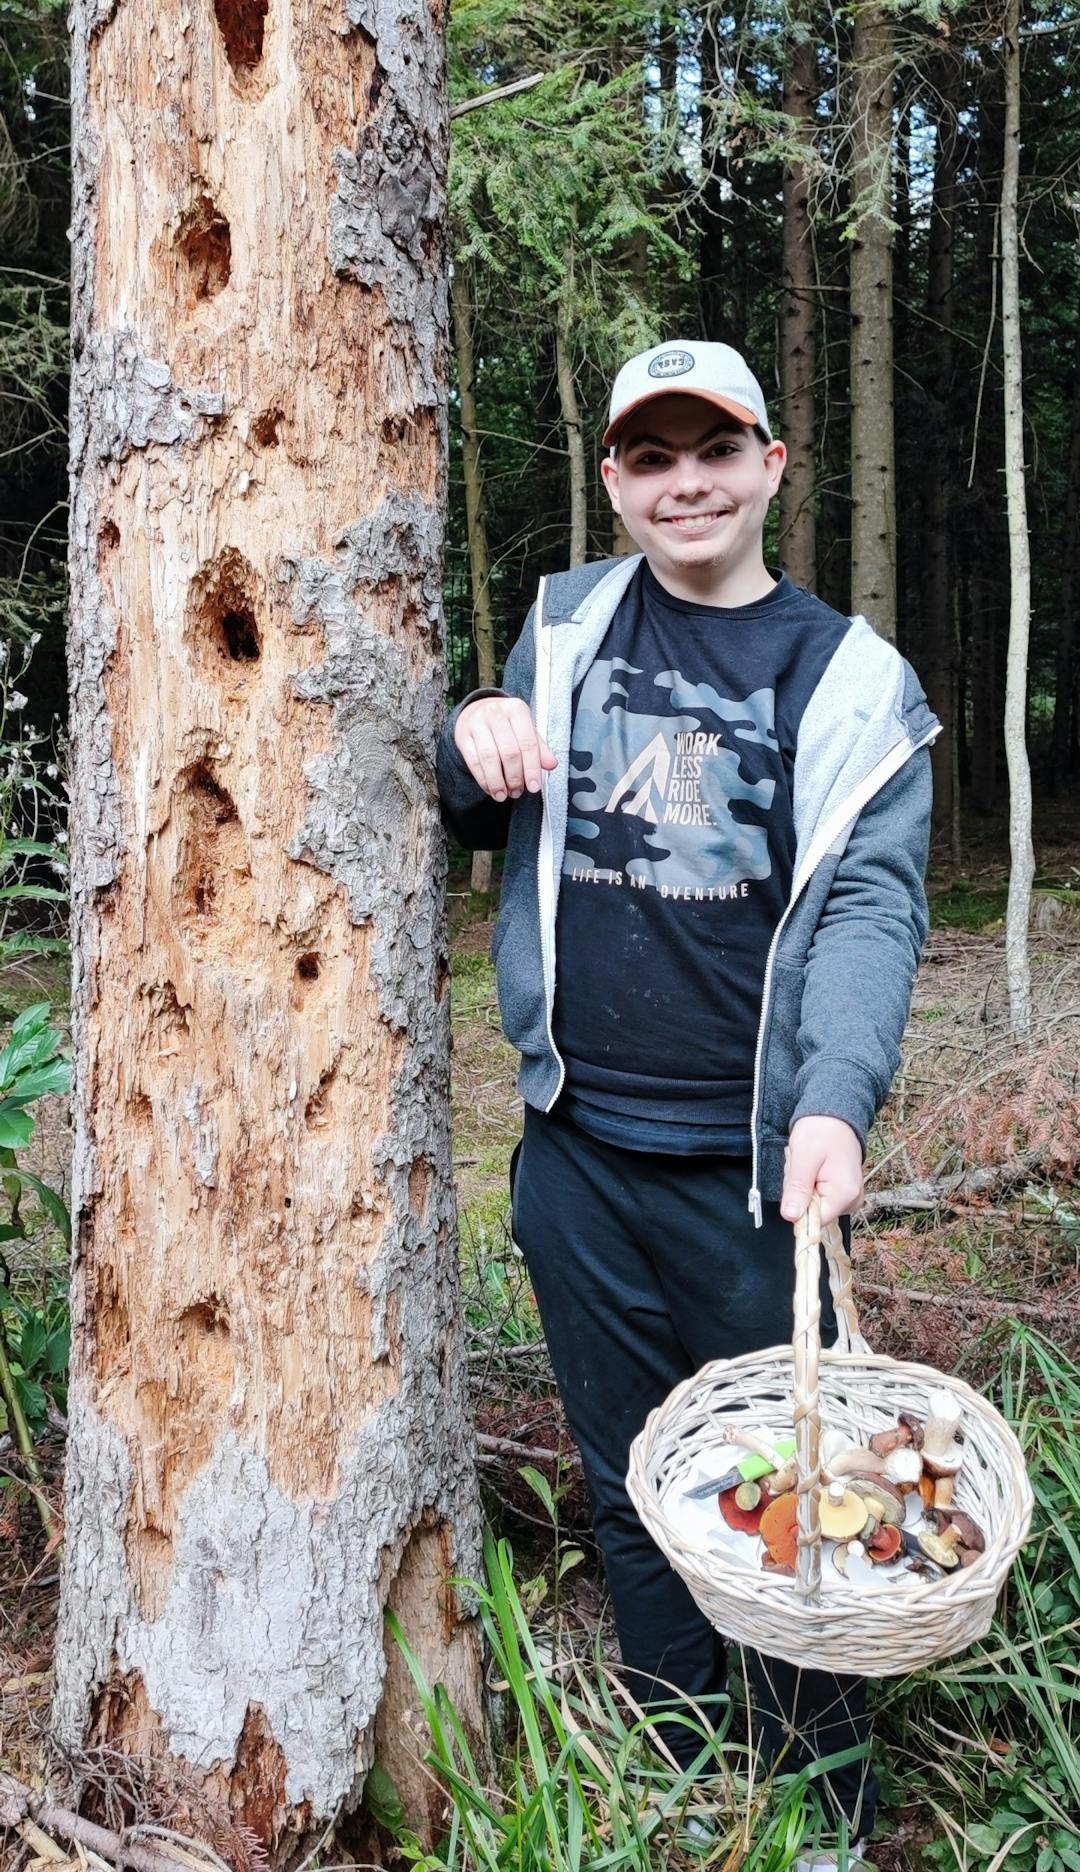 W rezerwacie przyrody Jedlina | chłopioec z grzybami przy drzewie.jpg